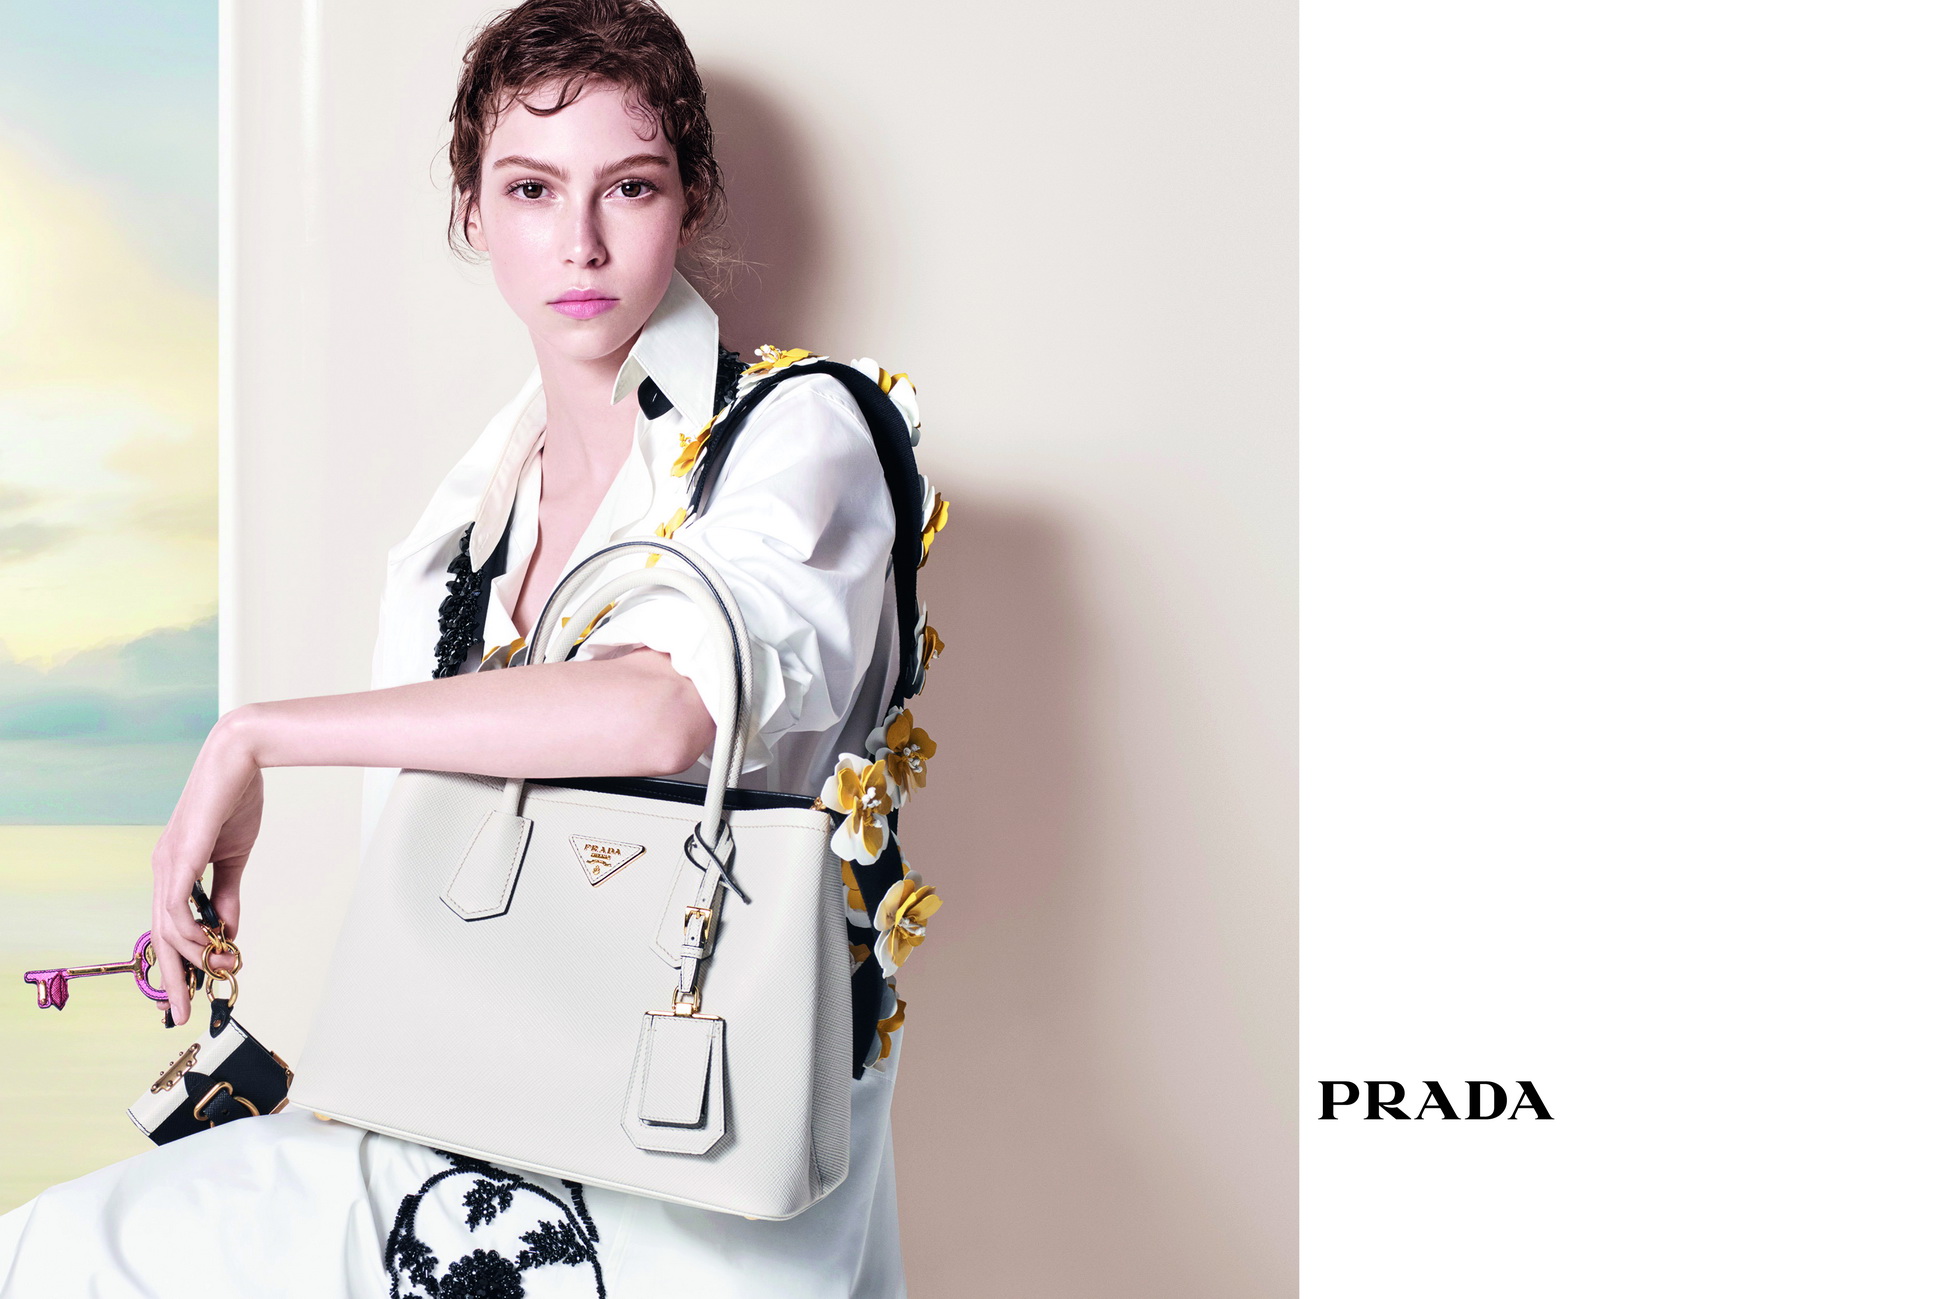 Prada представили нову рекламну кампанію-320x180